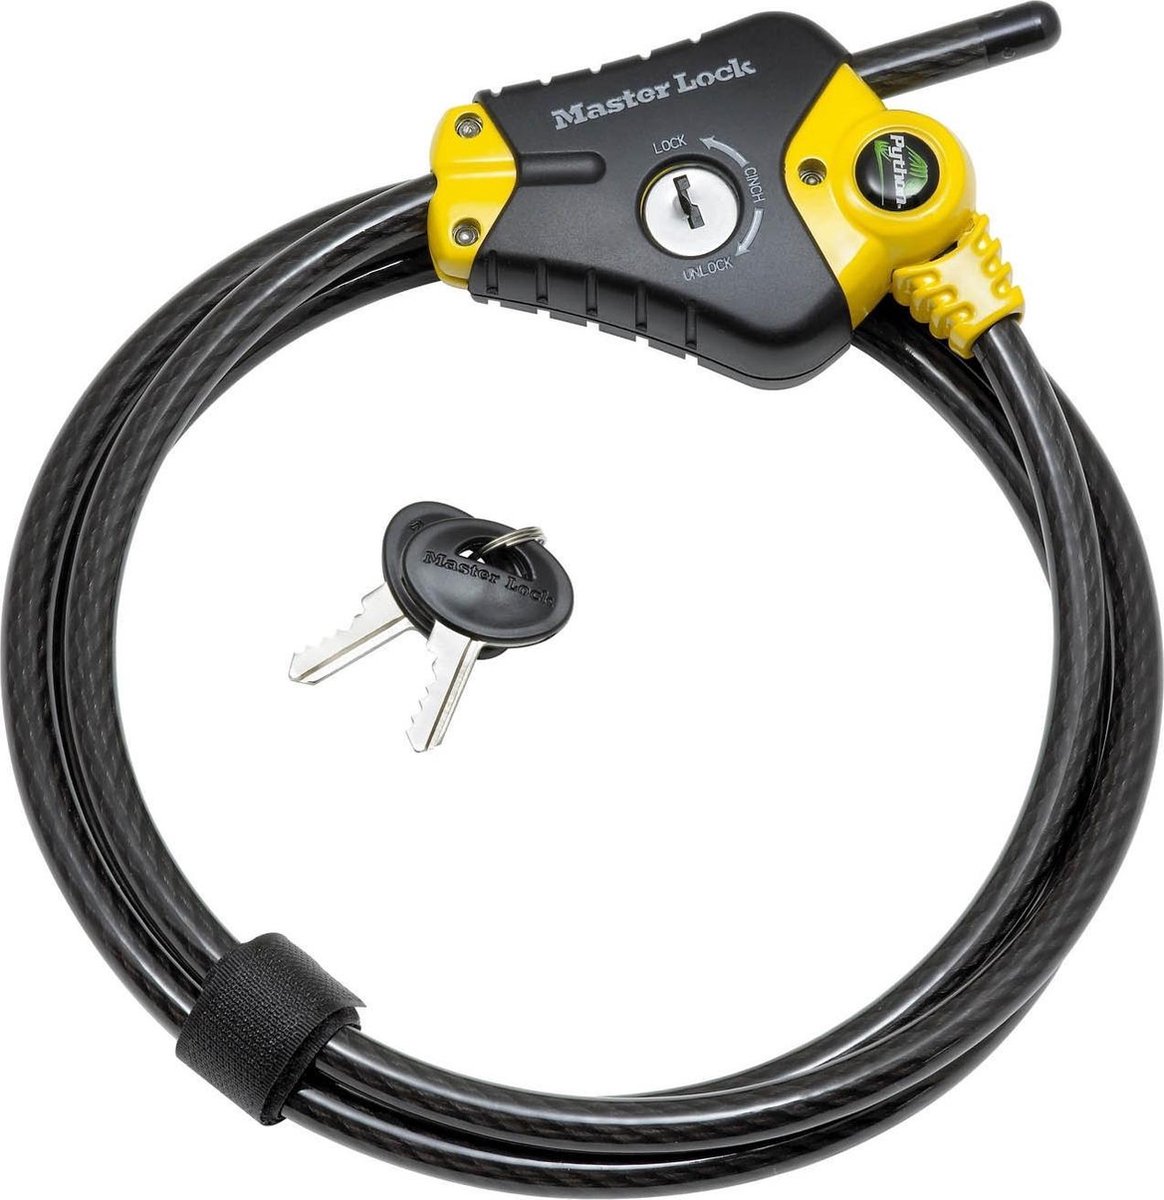 Masterlock Adjustable locking cable 1,80 m x Ø 10 mm - 4 keys